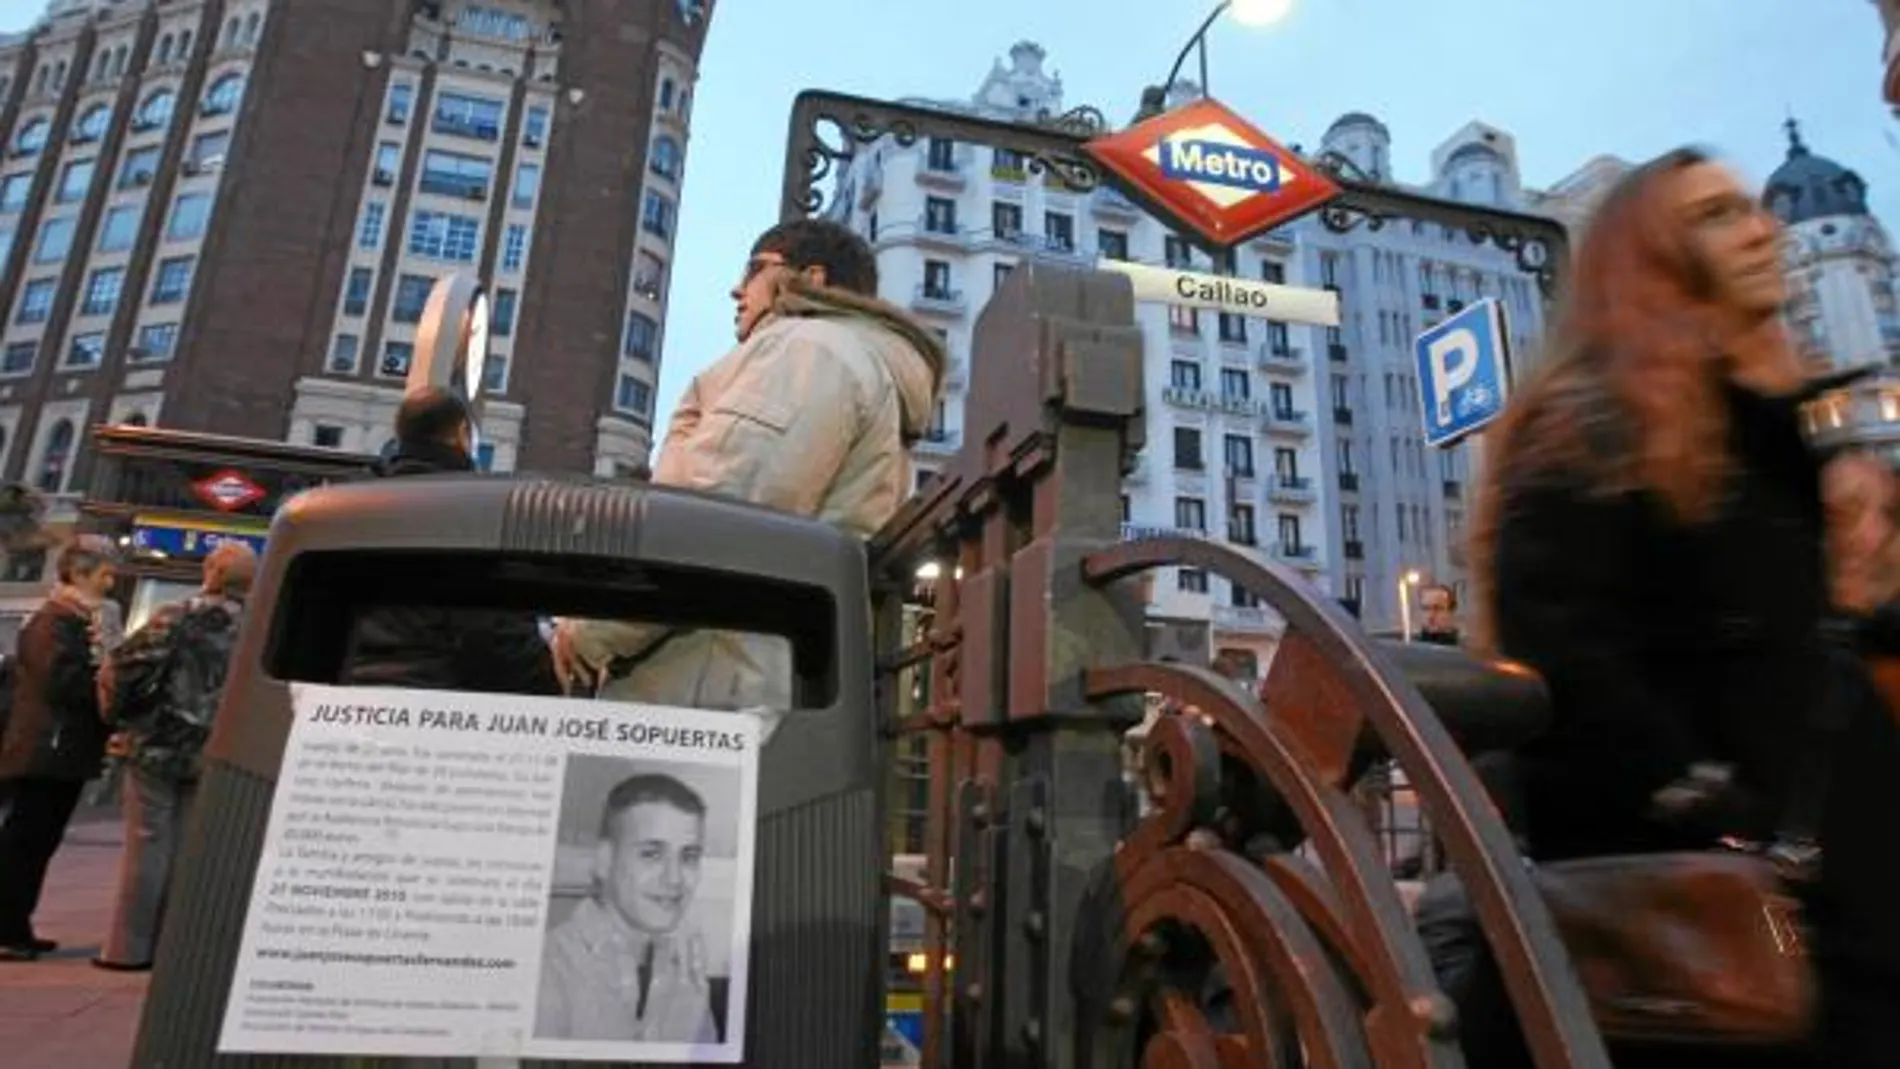 Imagen de uno de los carteles distribuidos por el centro de Madrid pidiendo justicia para Juanjo Sopuertas